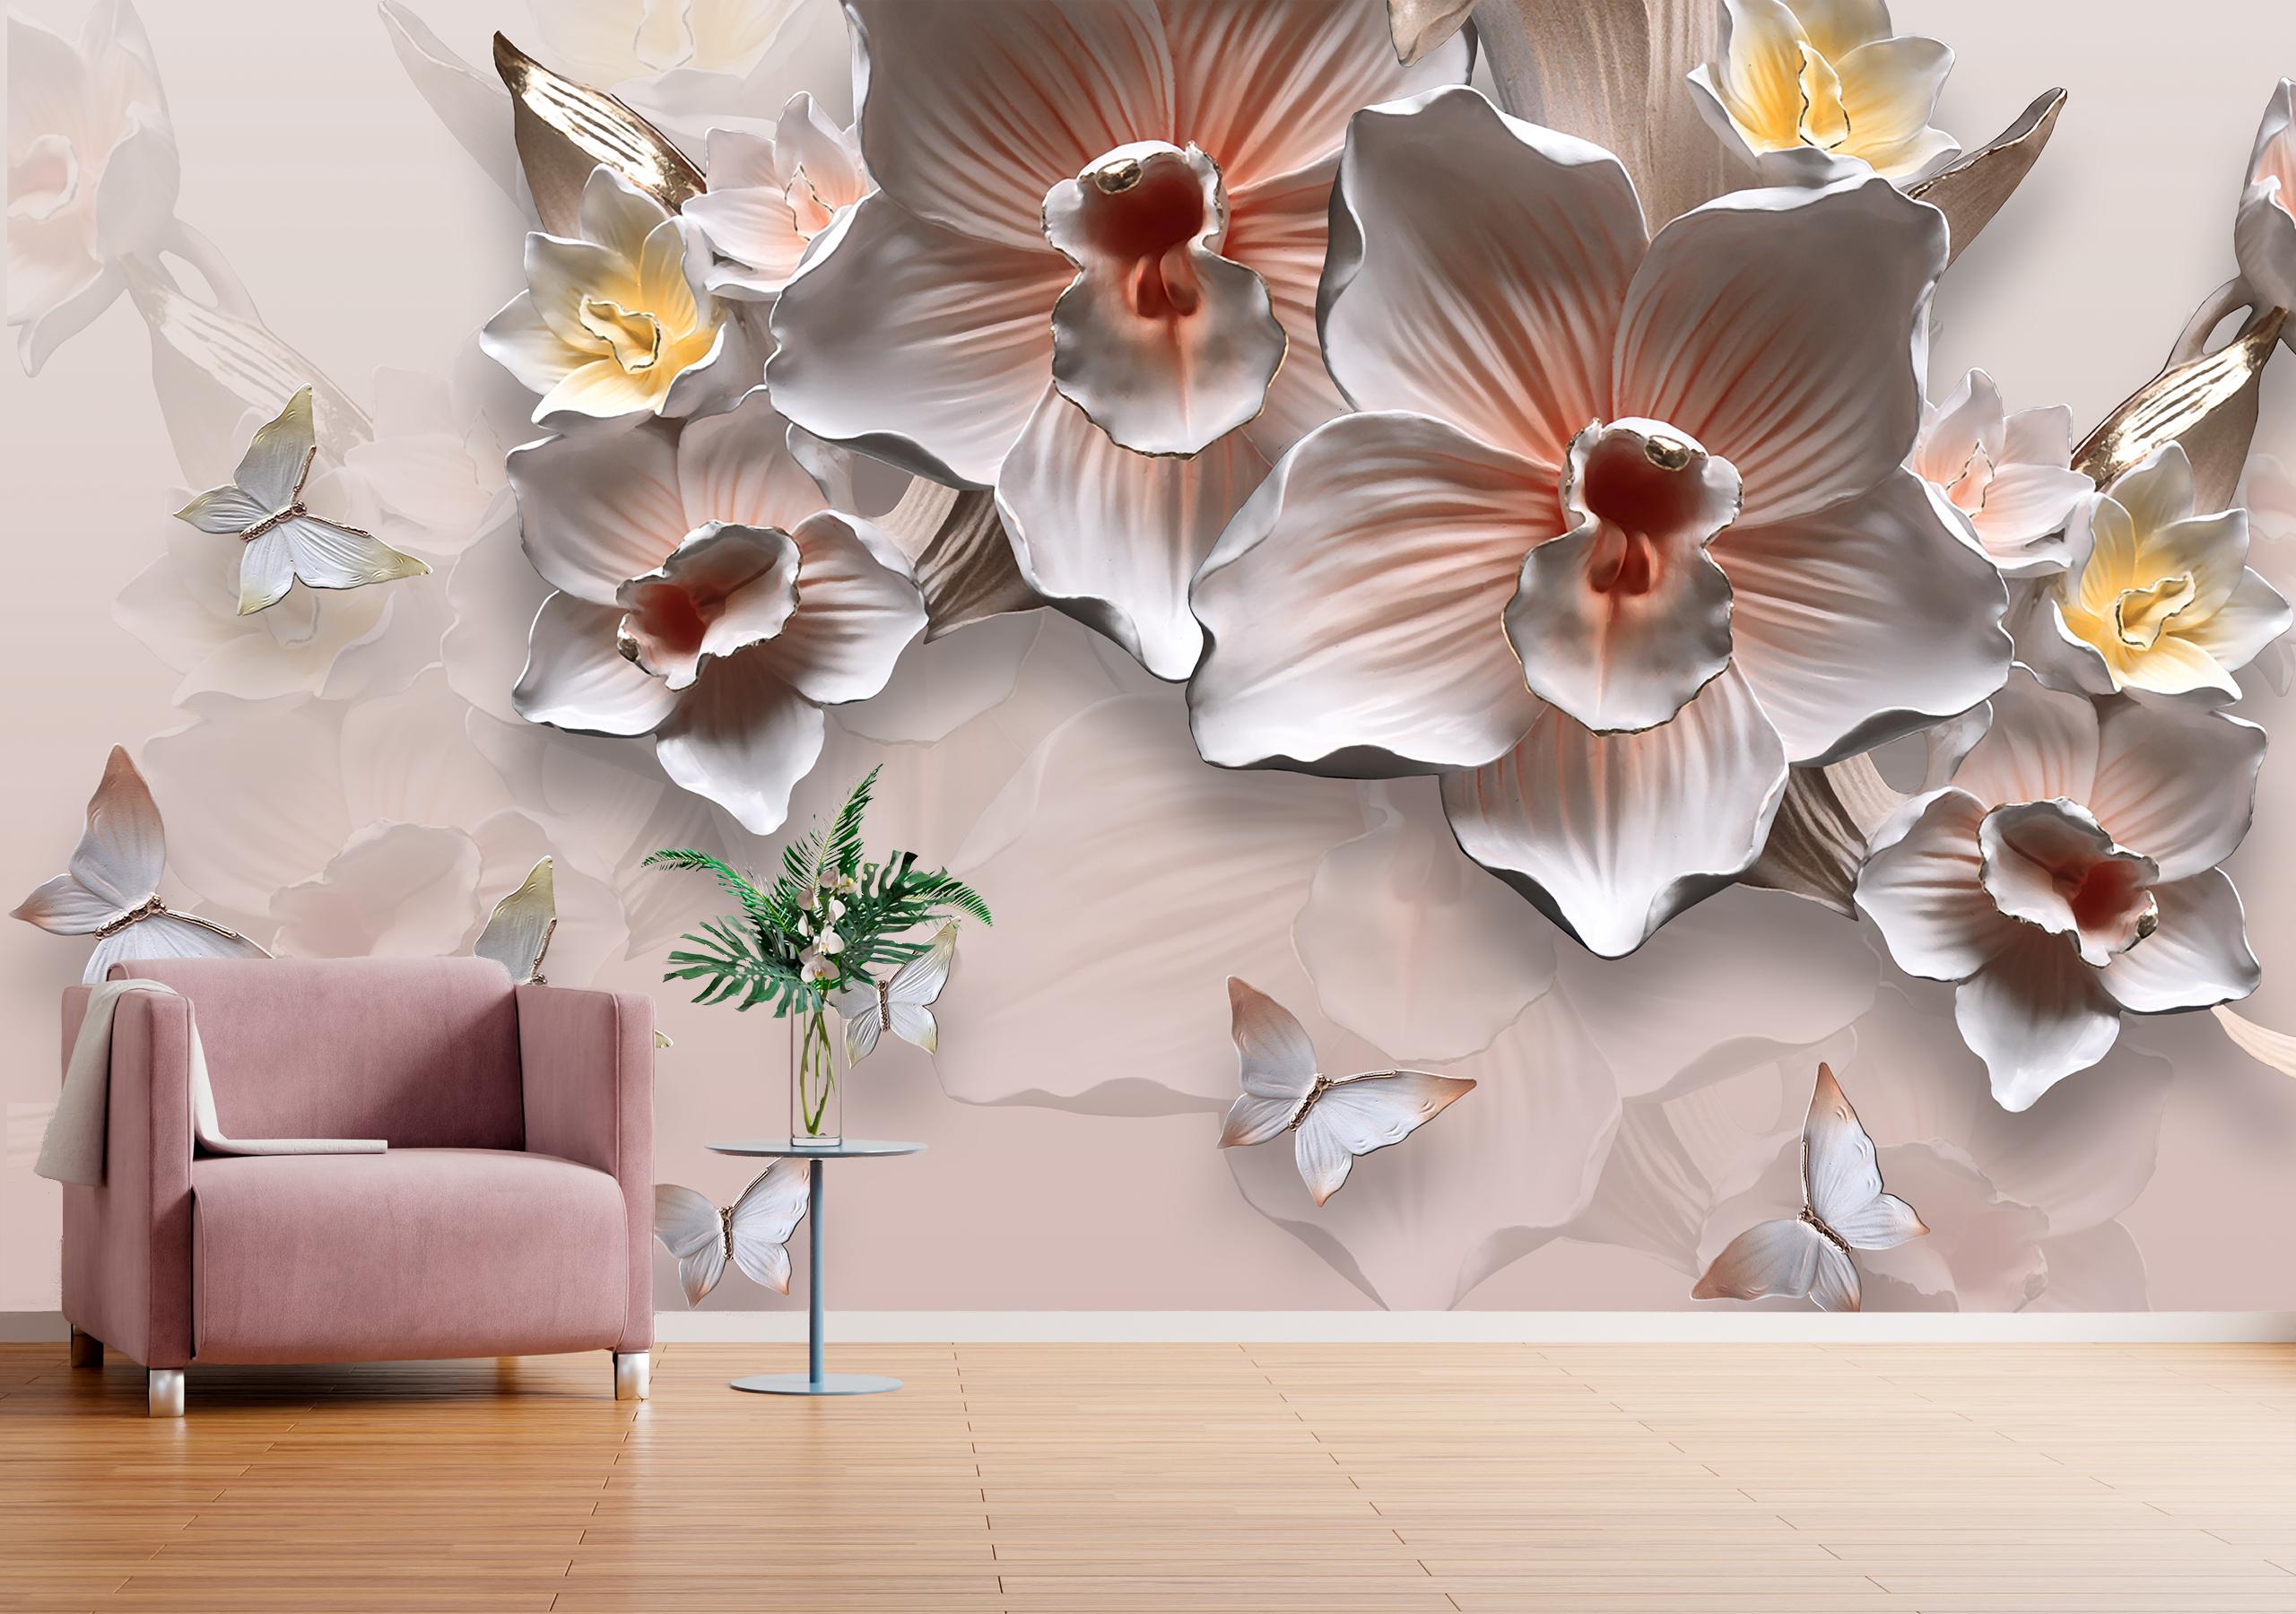 

Виниловые Фотообои Walldeco Орхидеи и бабочки, барельеф 300x200 Мелкий песок с блестками